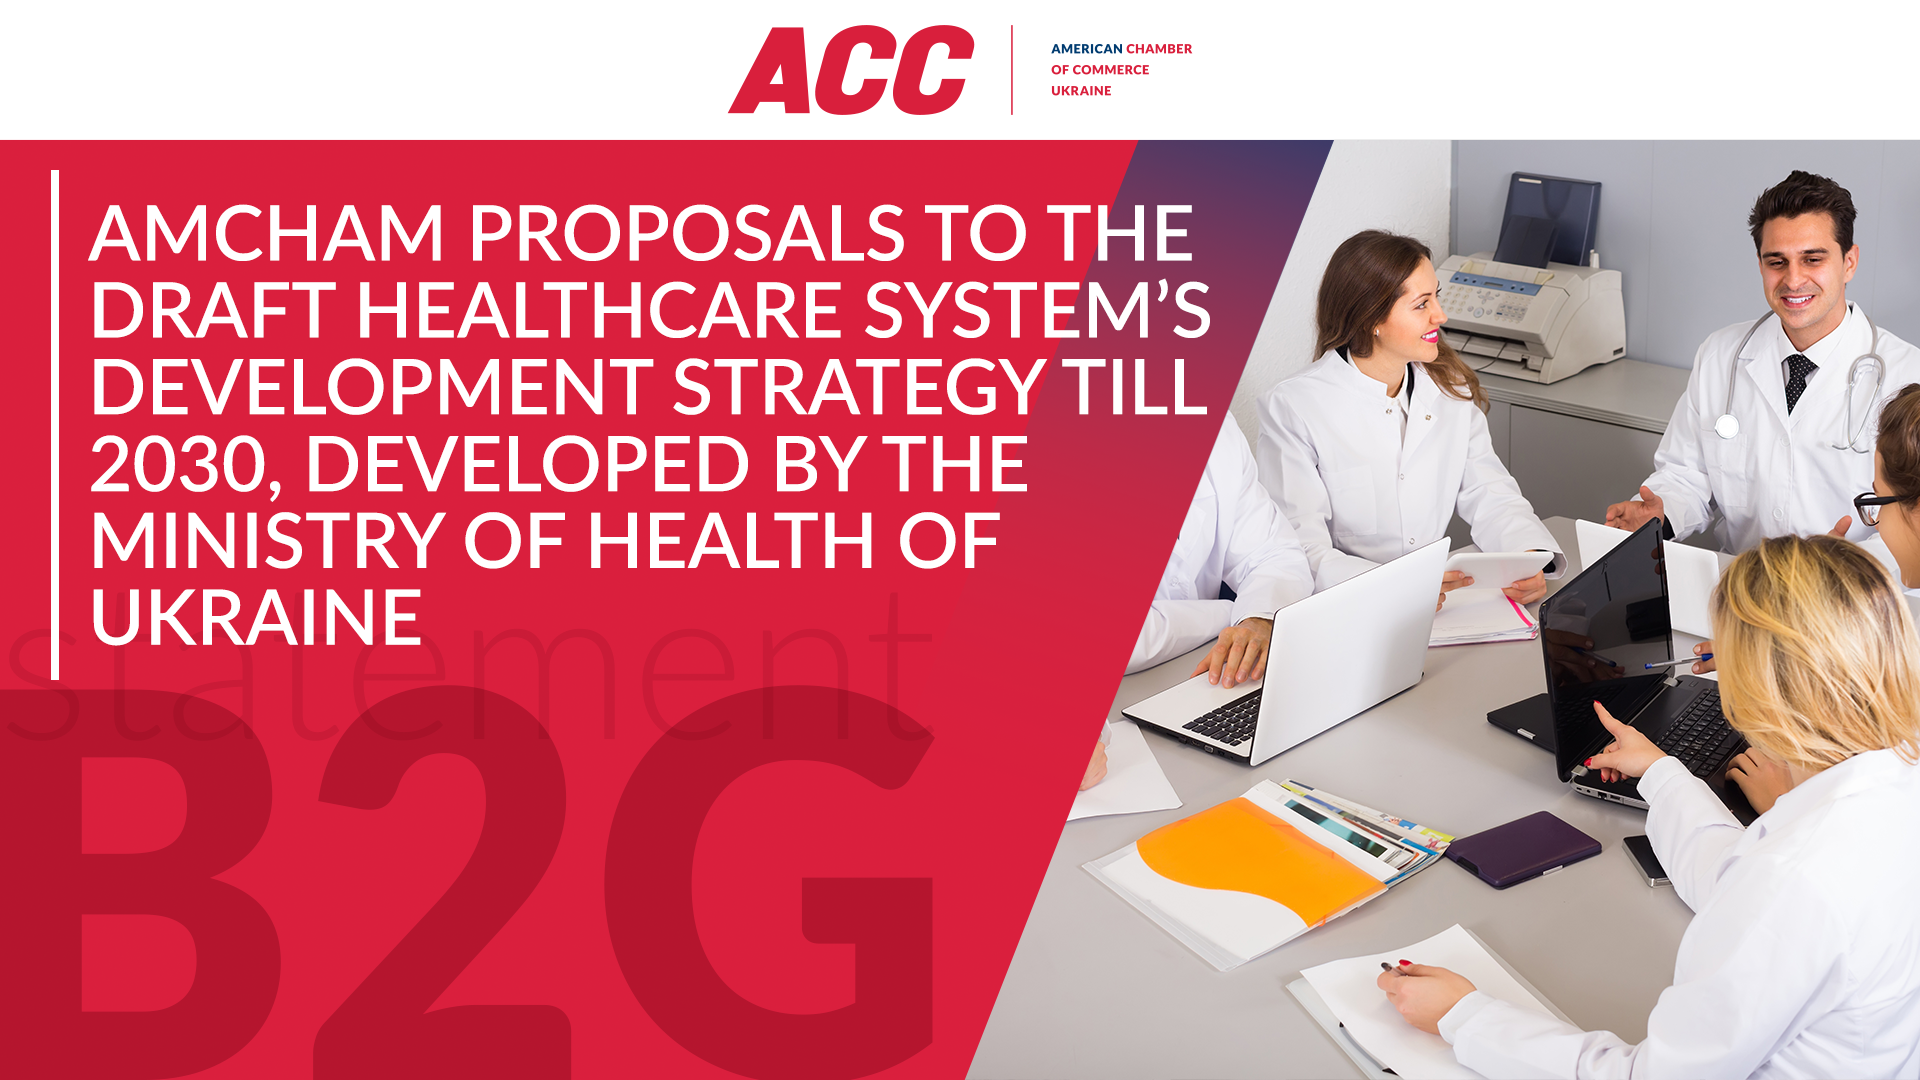 Пропозиції компаній-членів Палати до проекту Стратегії розвитку системи охорони здоров’я 2030, що розробляється МОЗ України